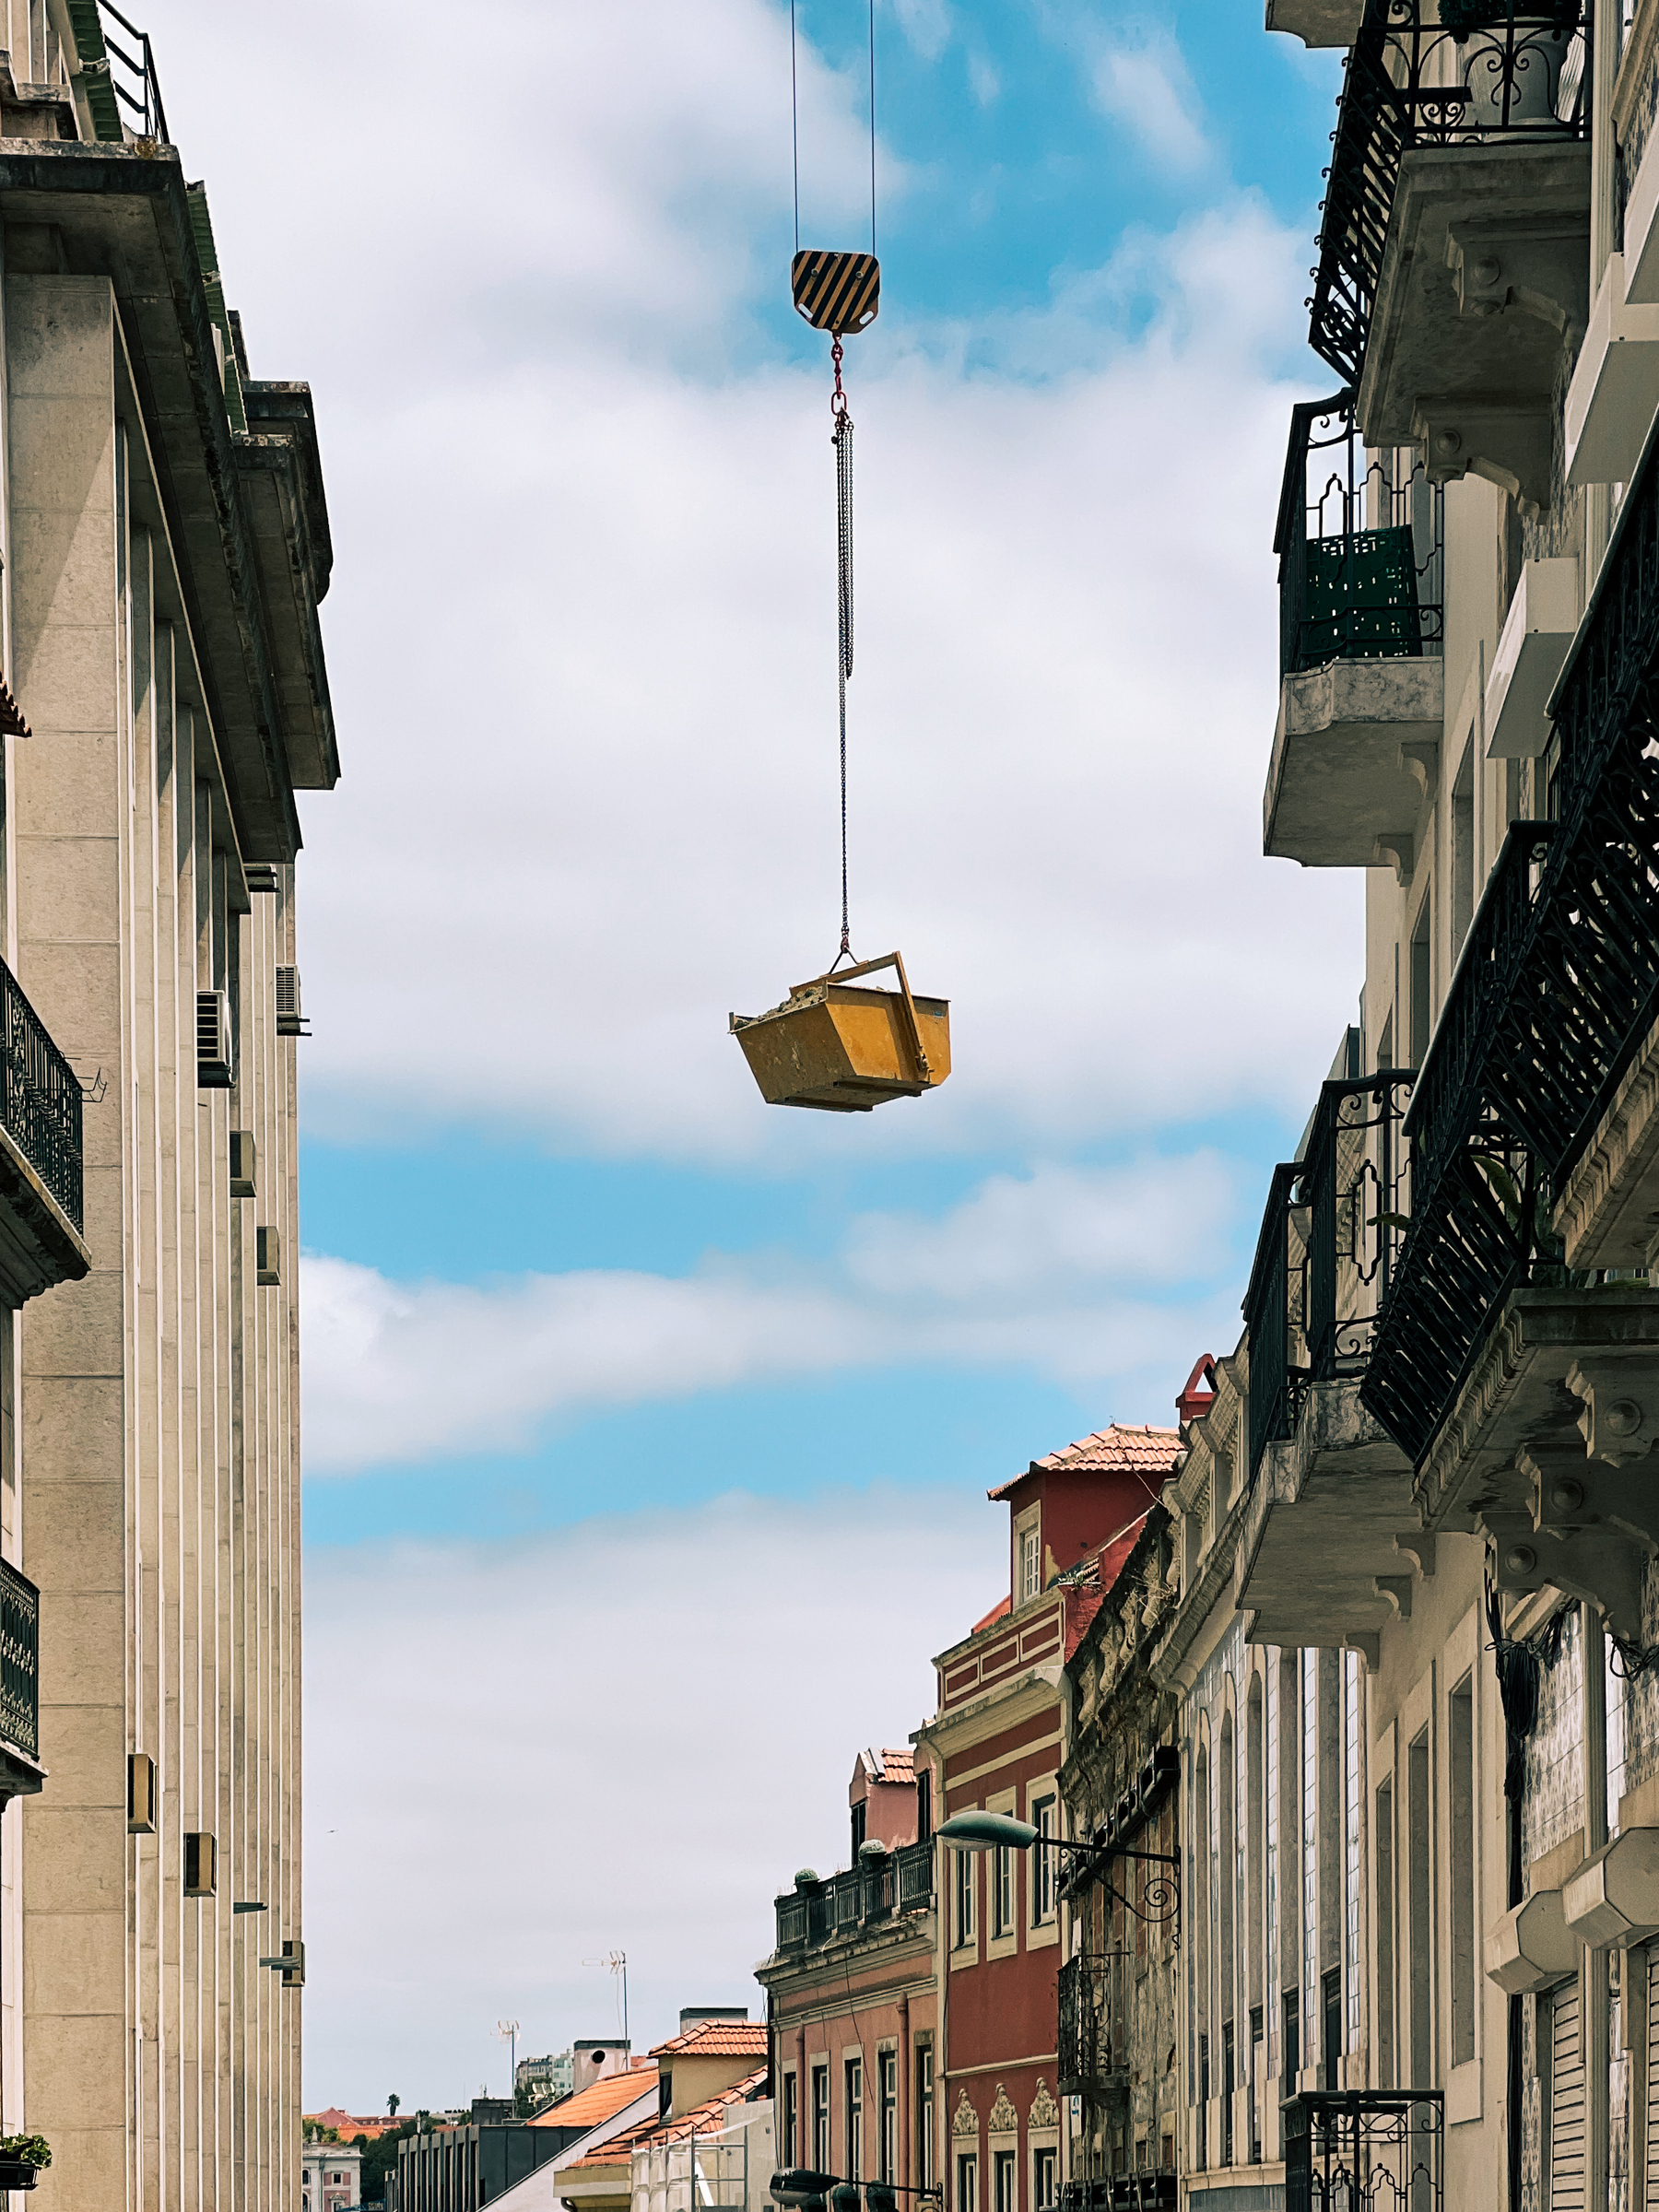 A “crane basket” hanging. 